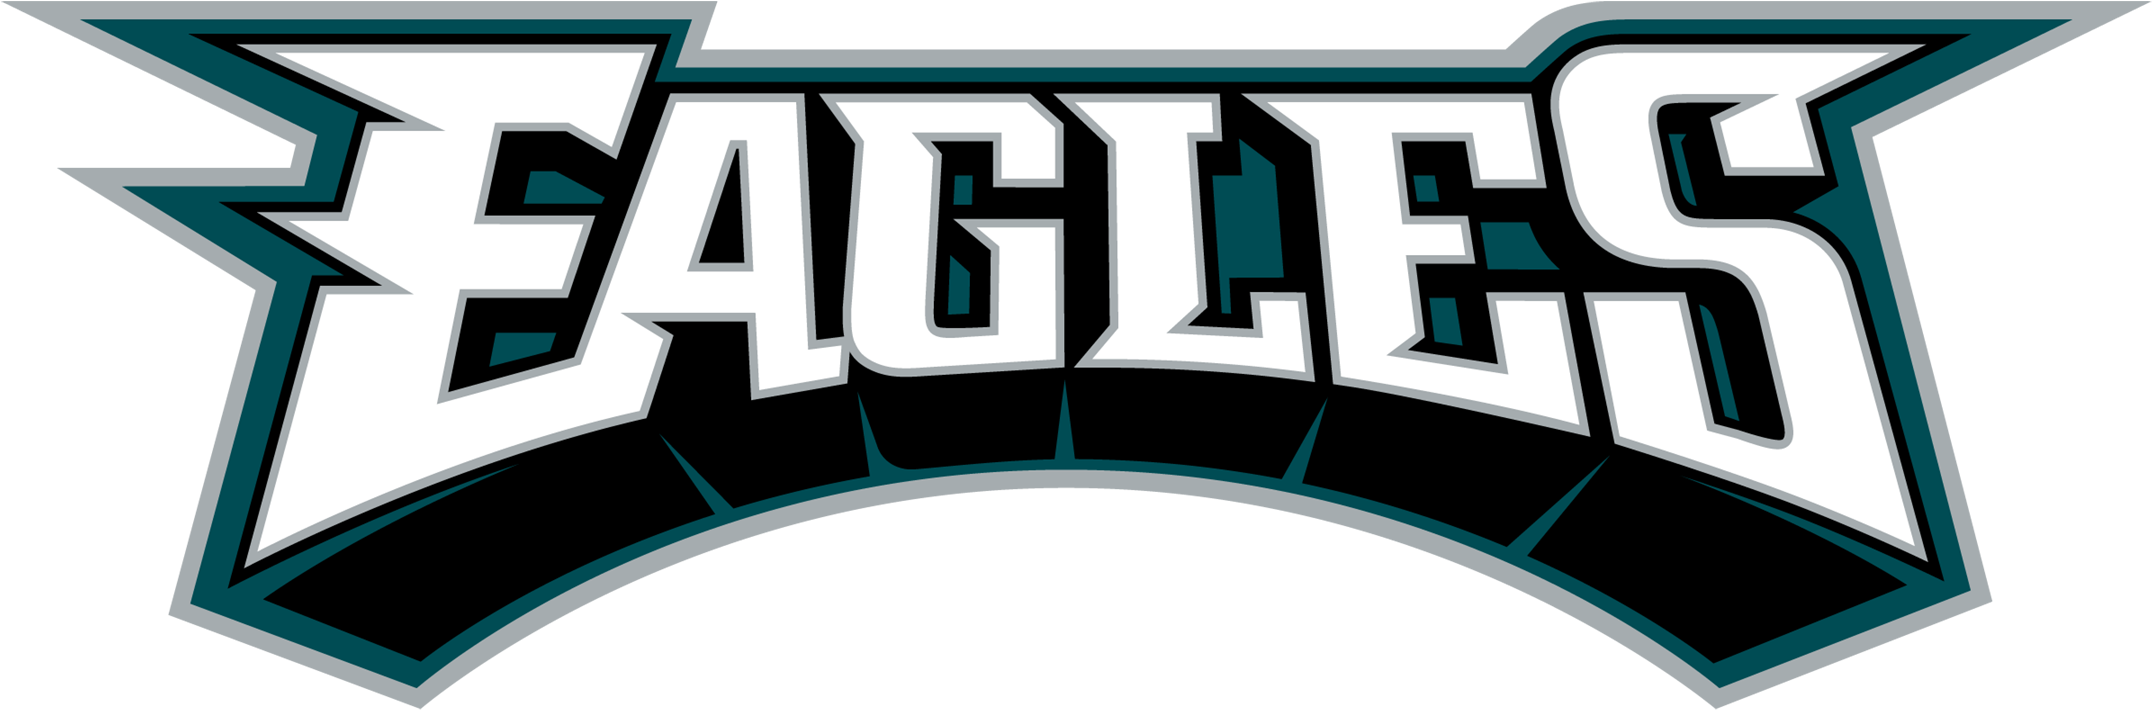 Eagles Logo PNG Background Image